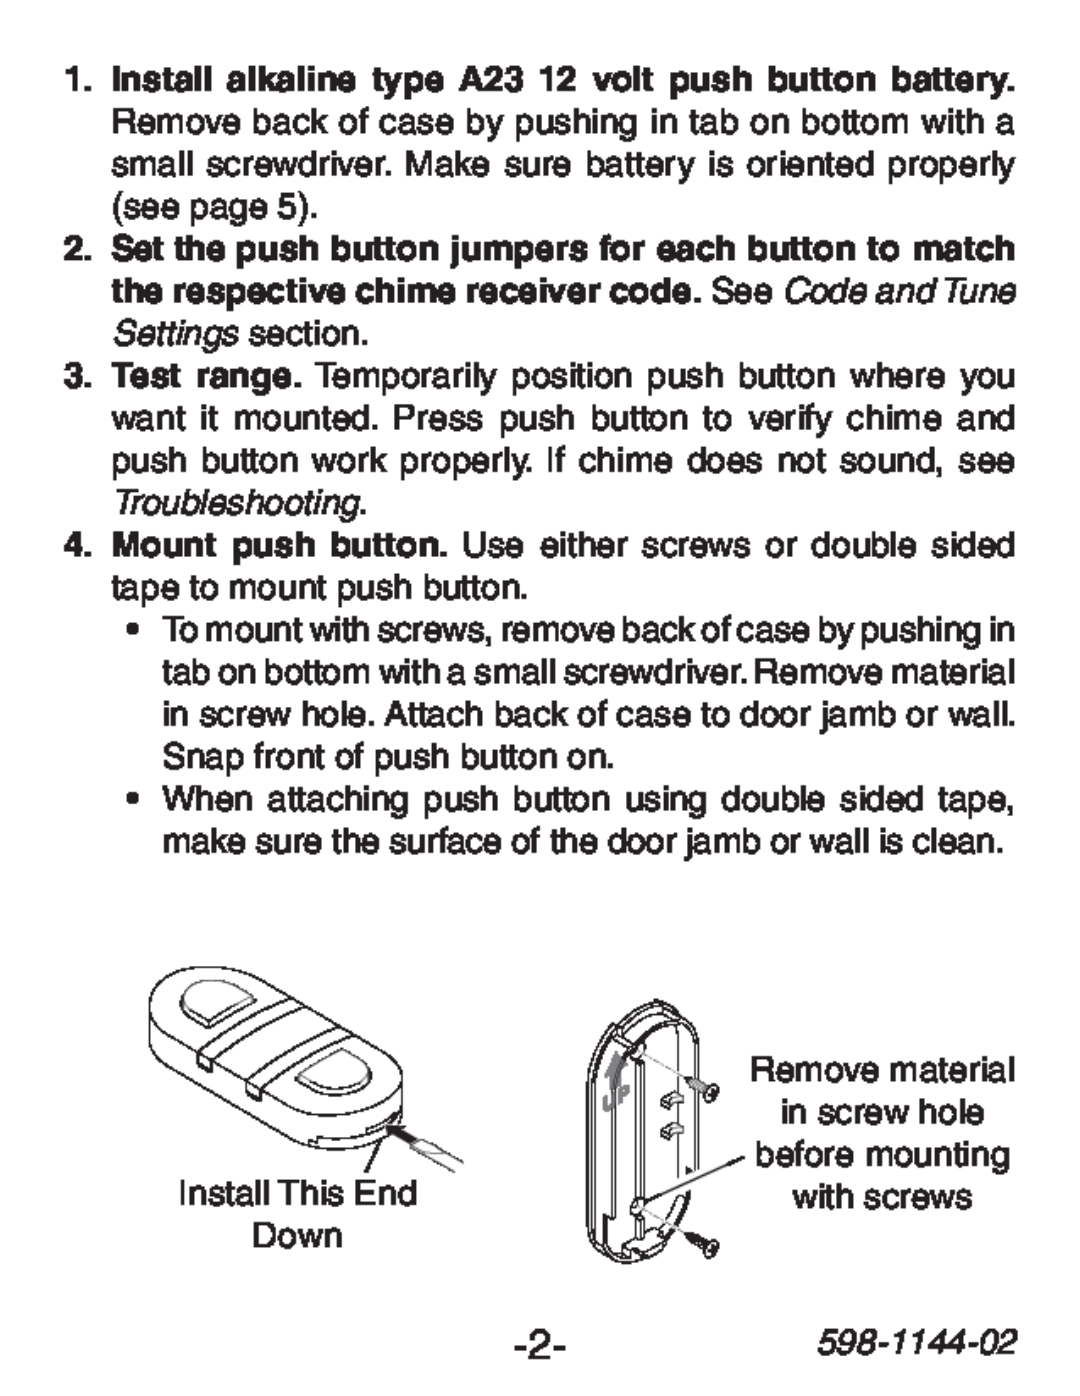 Heath Zenith SL-6200 manual 598-1144-02, Remove material 